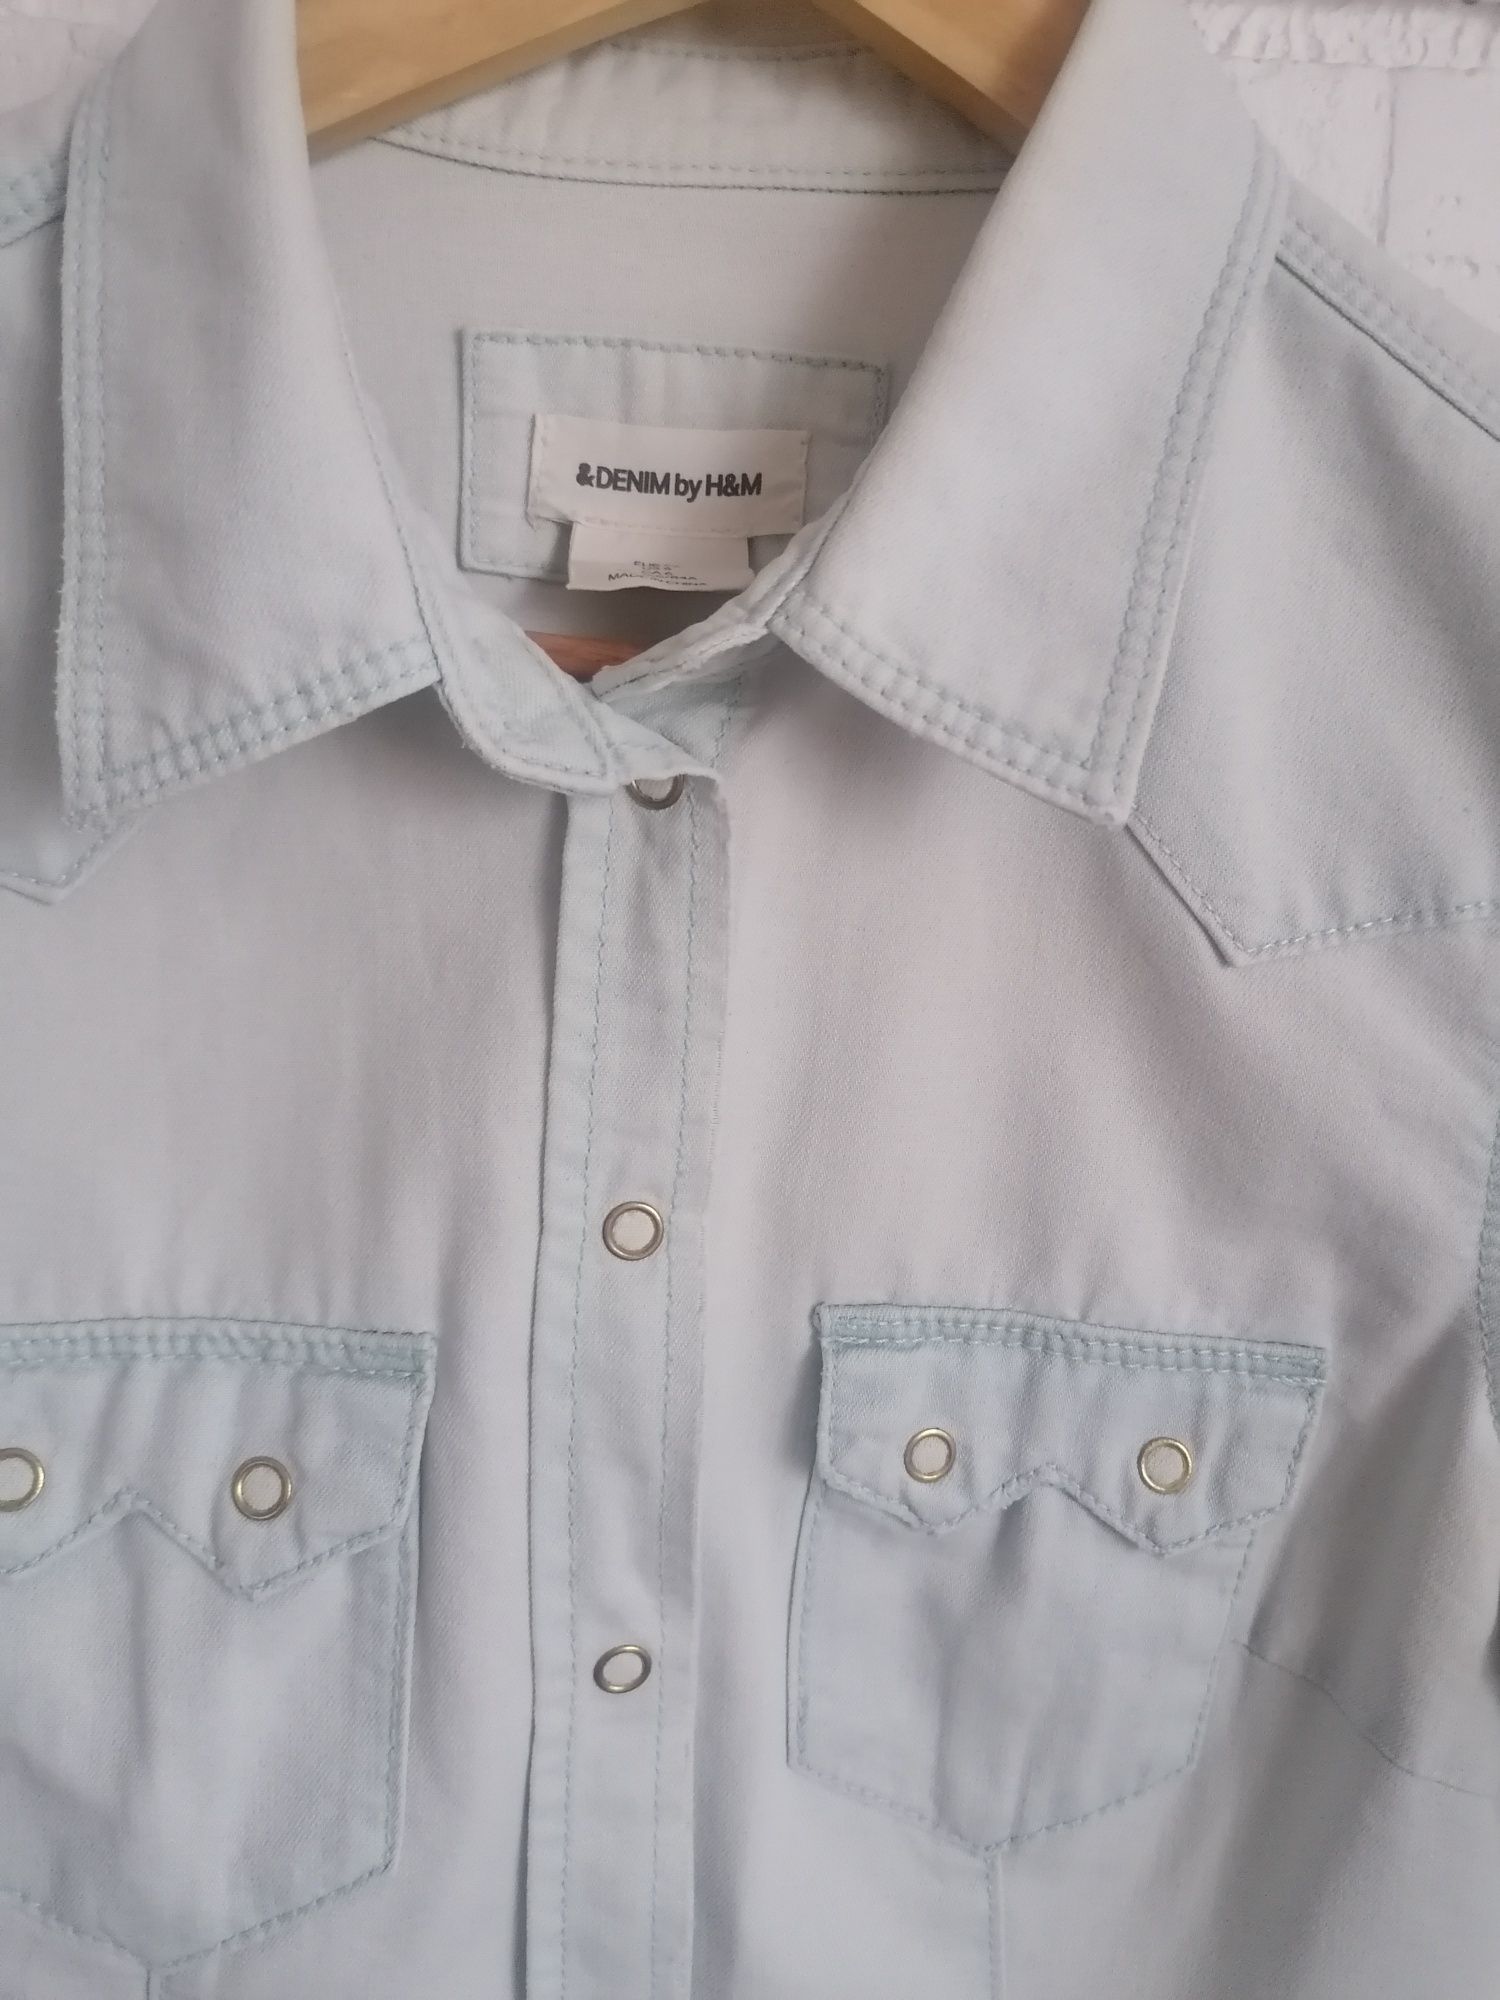 Koszula dżinsowa hm r. 36, jasnoniebieska, z kieszonkami